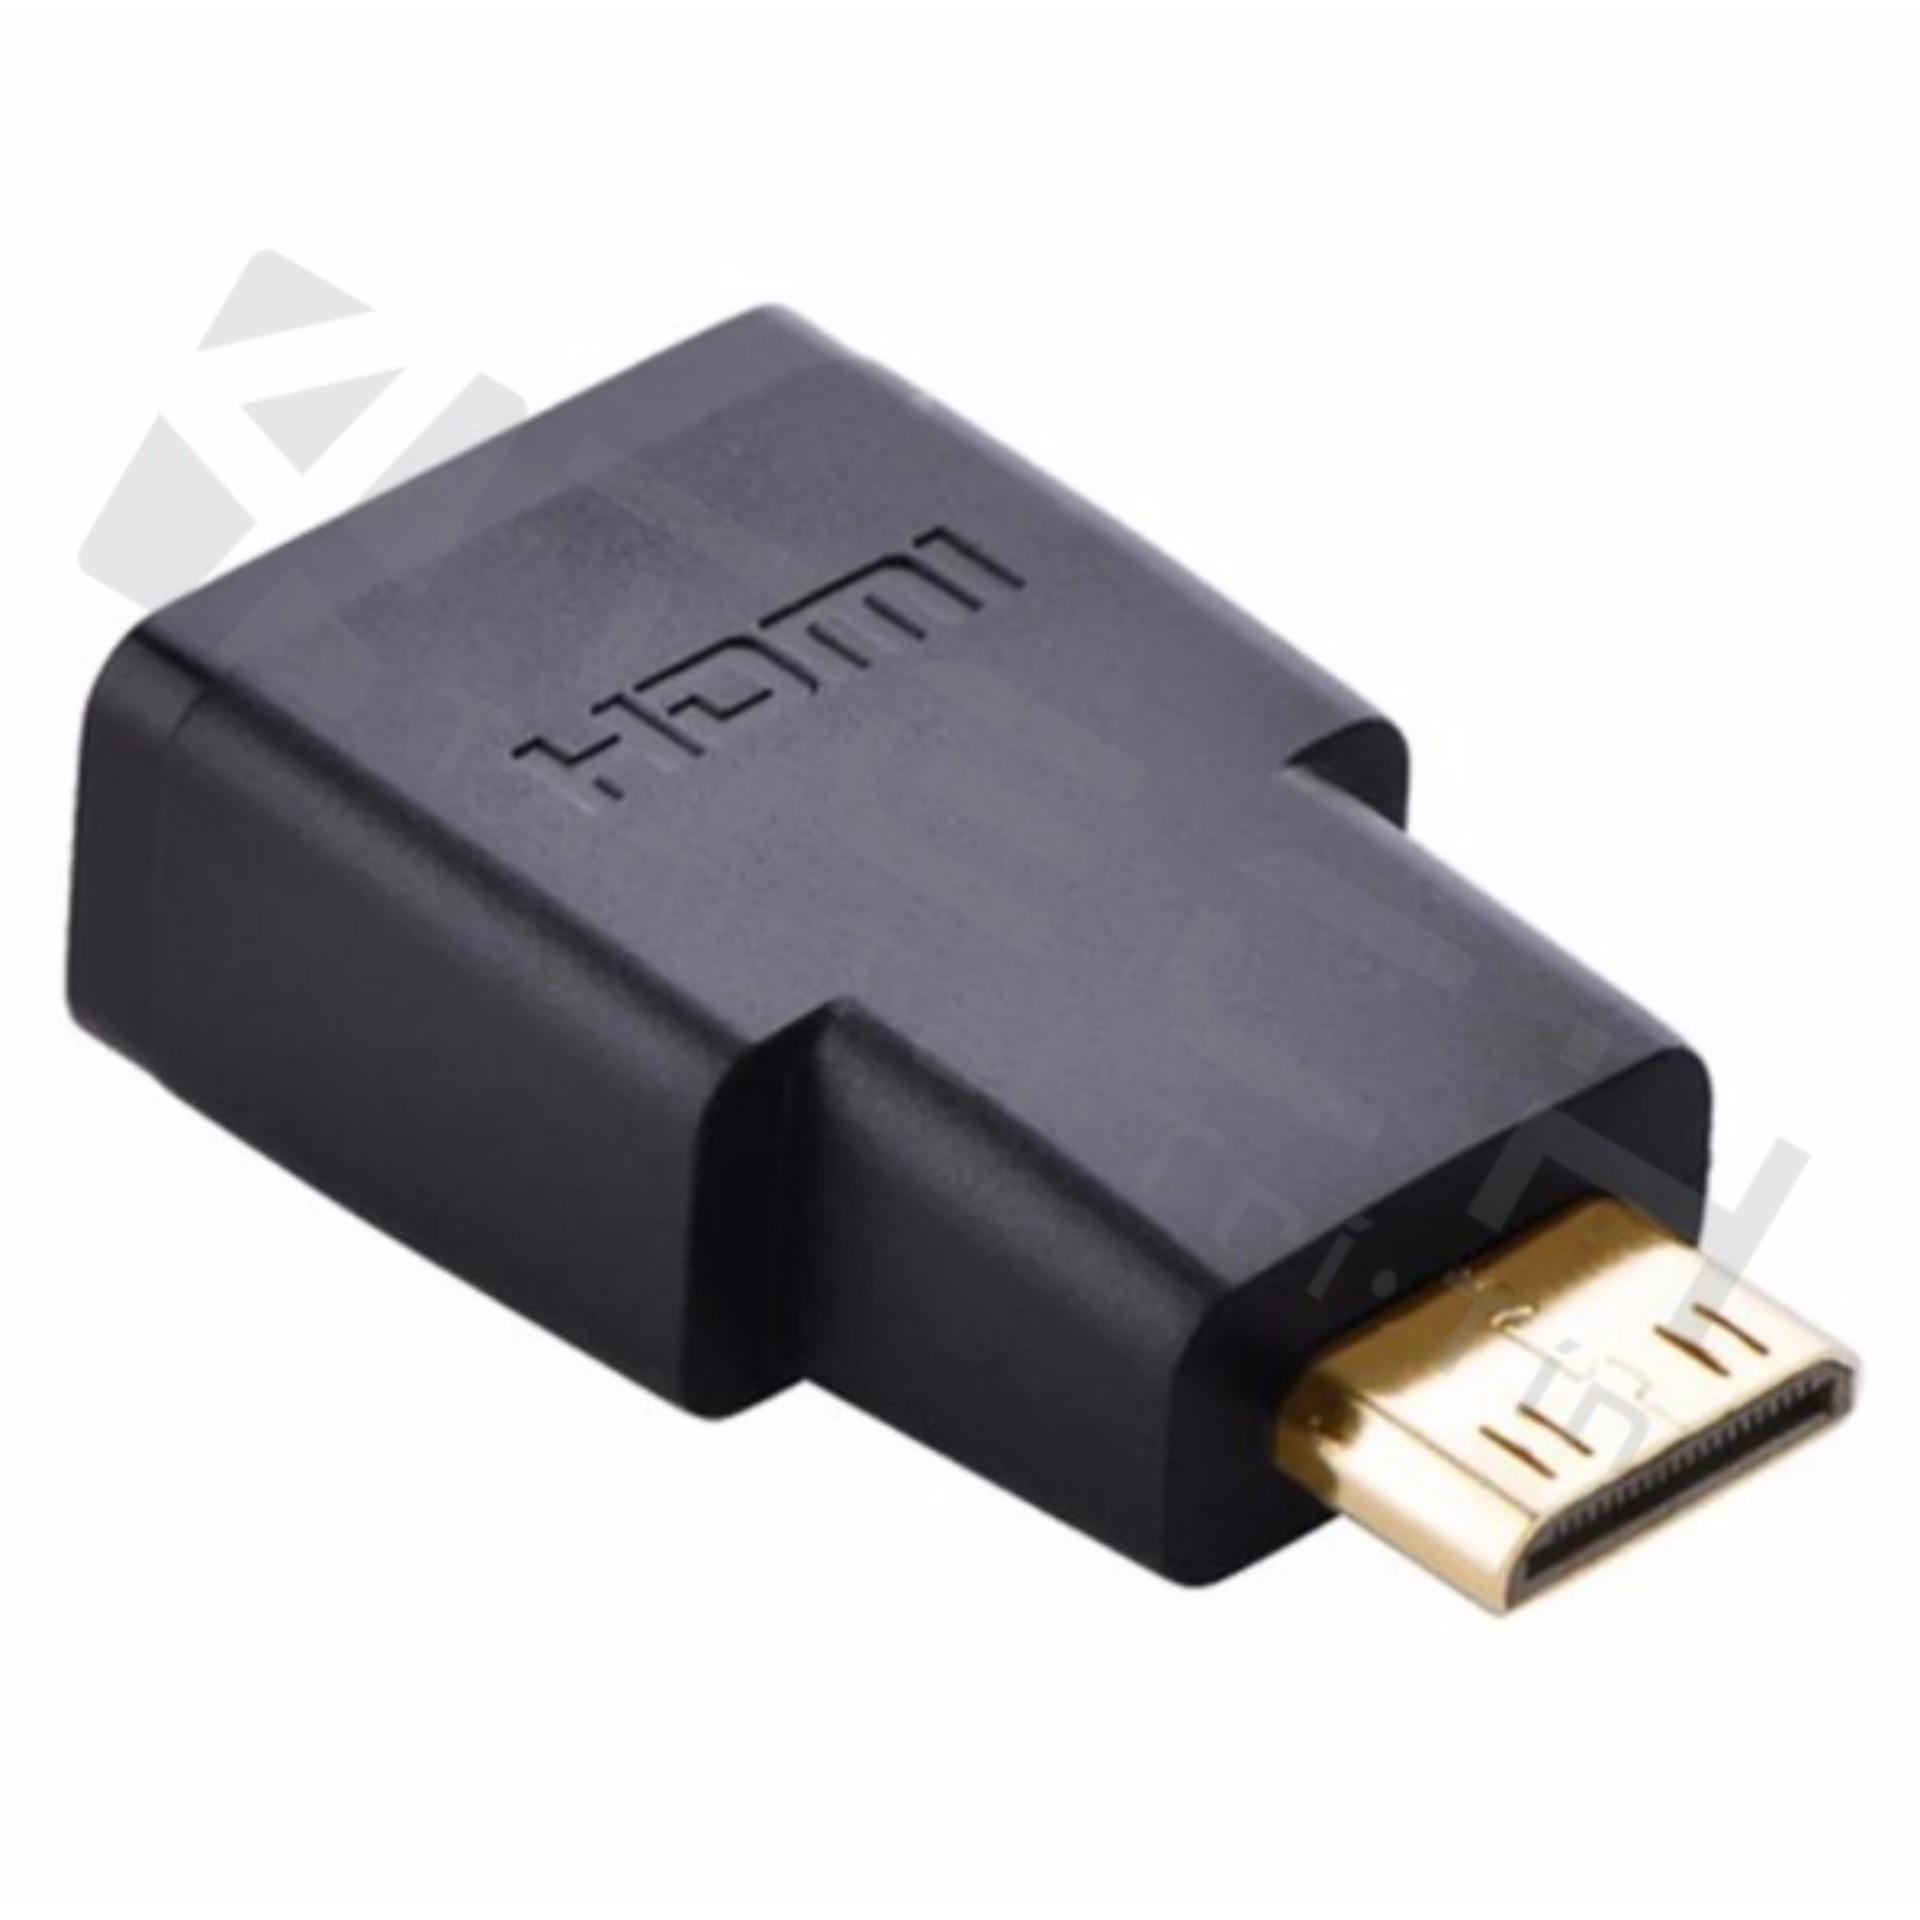 Đầu chuyển Mini HDMI to HDMI (âm) Ugreen 20101